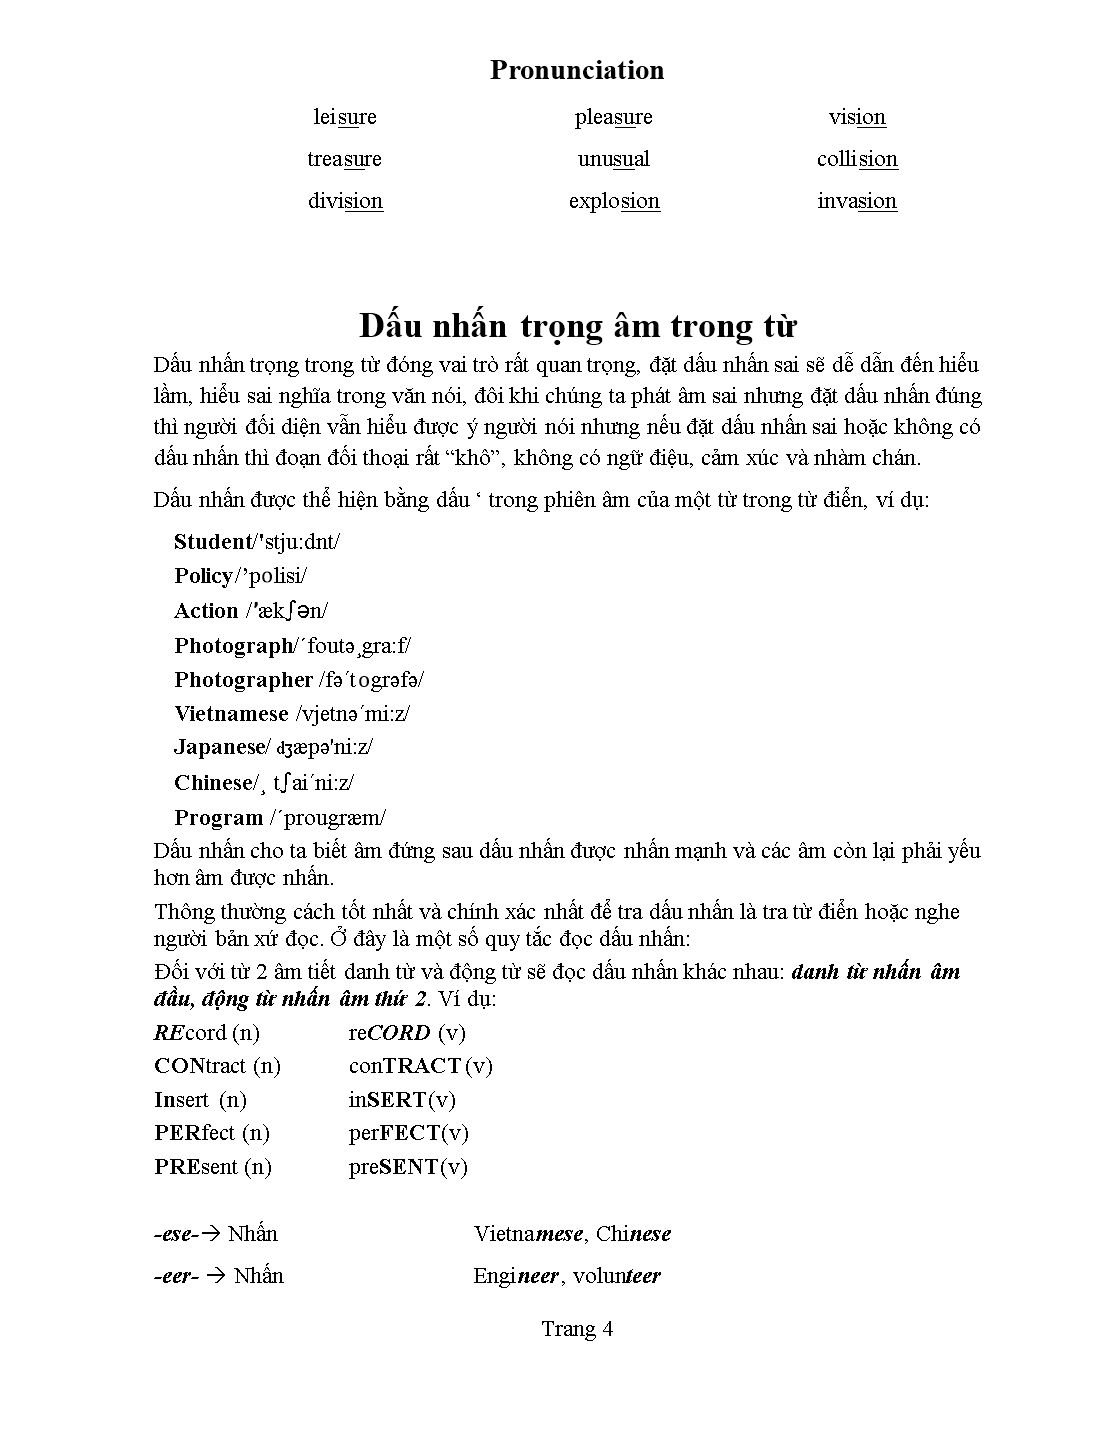 Tài liệu Pronunciation - Kim Thanh trang 5